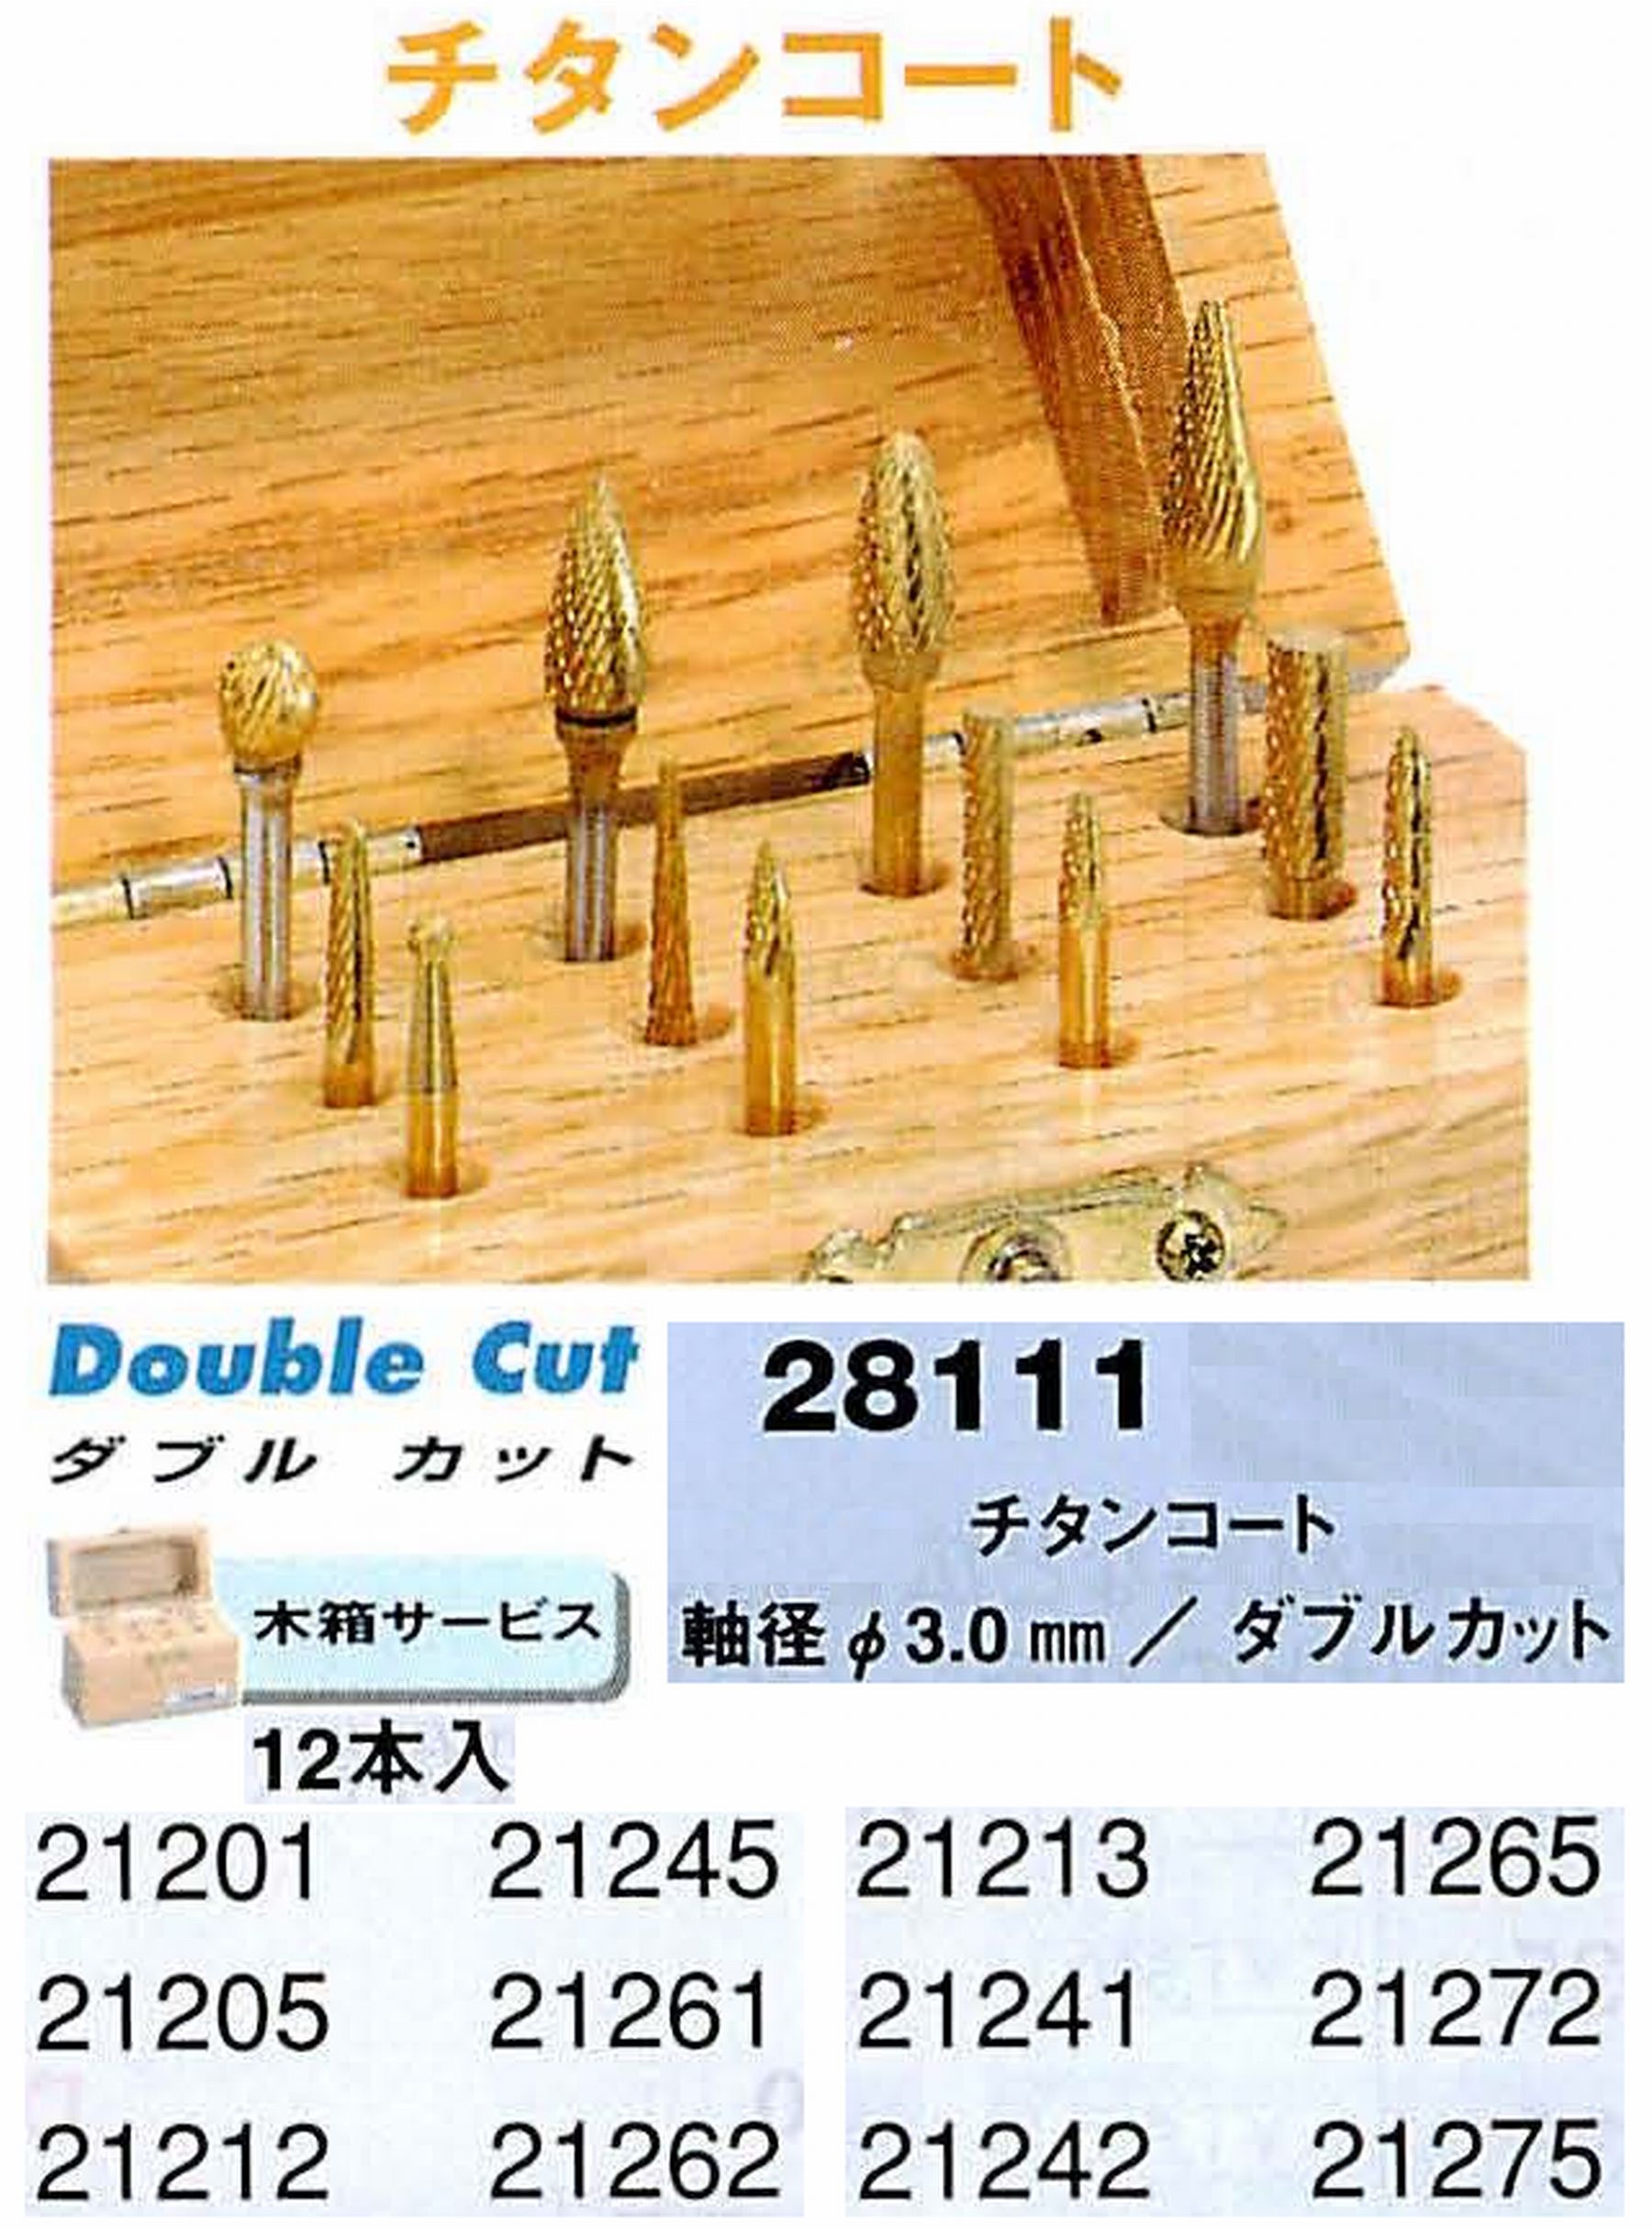 ナカニシ/NAKANISHI 超硬カッターチタンコート アソートセット 軸径(シャンク)φ3.0mm 28111